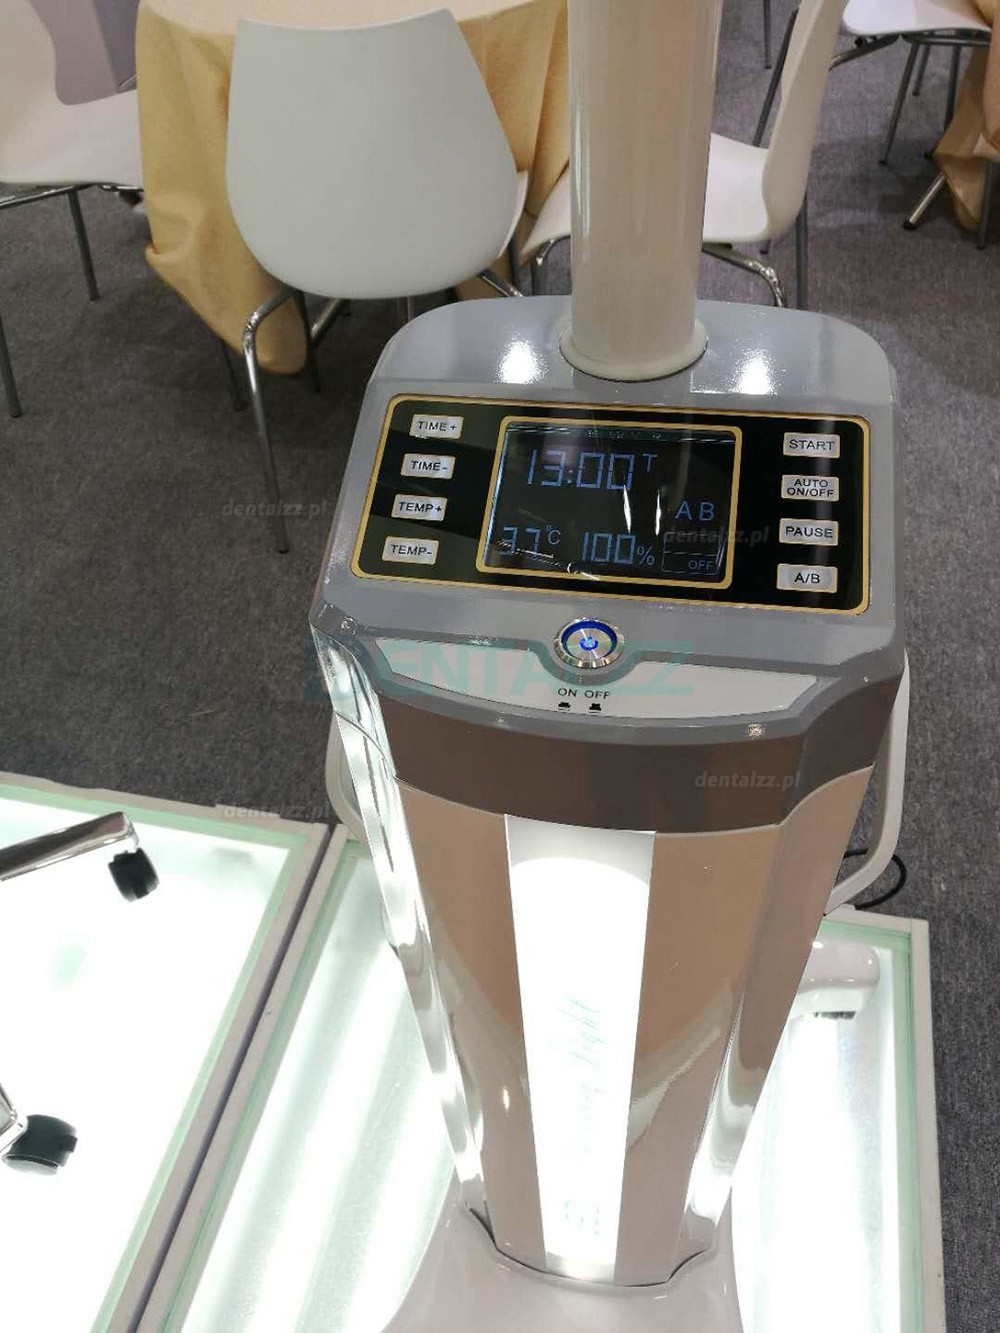 Mobilna 360 obrotowa profesjonalna lampa do wybielania zębów ze stałą temperaturą